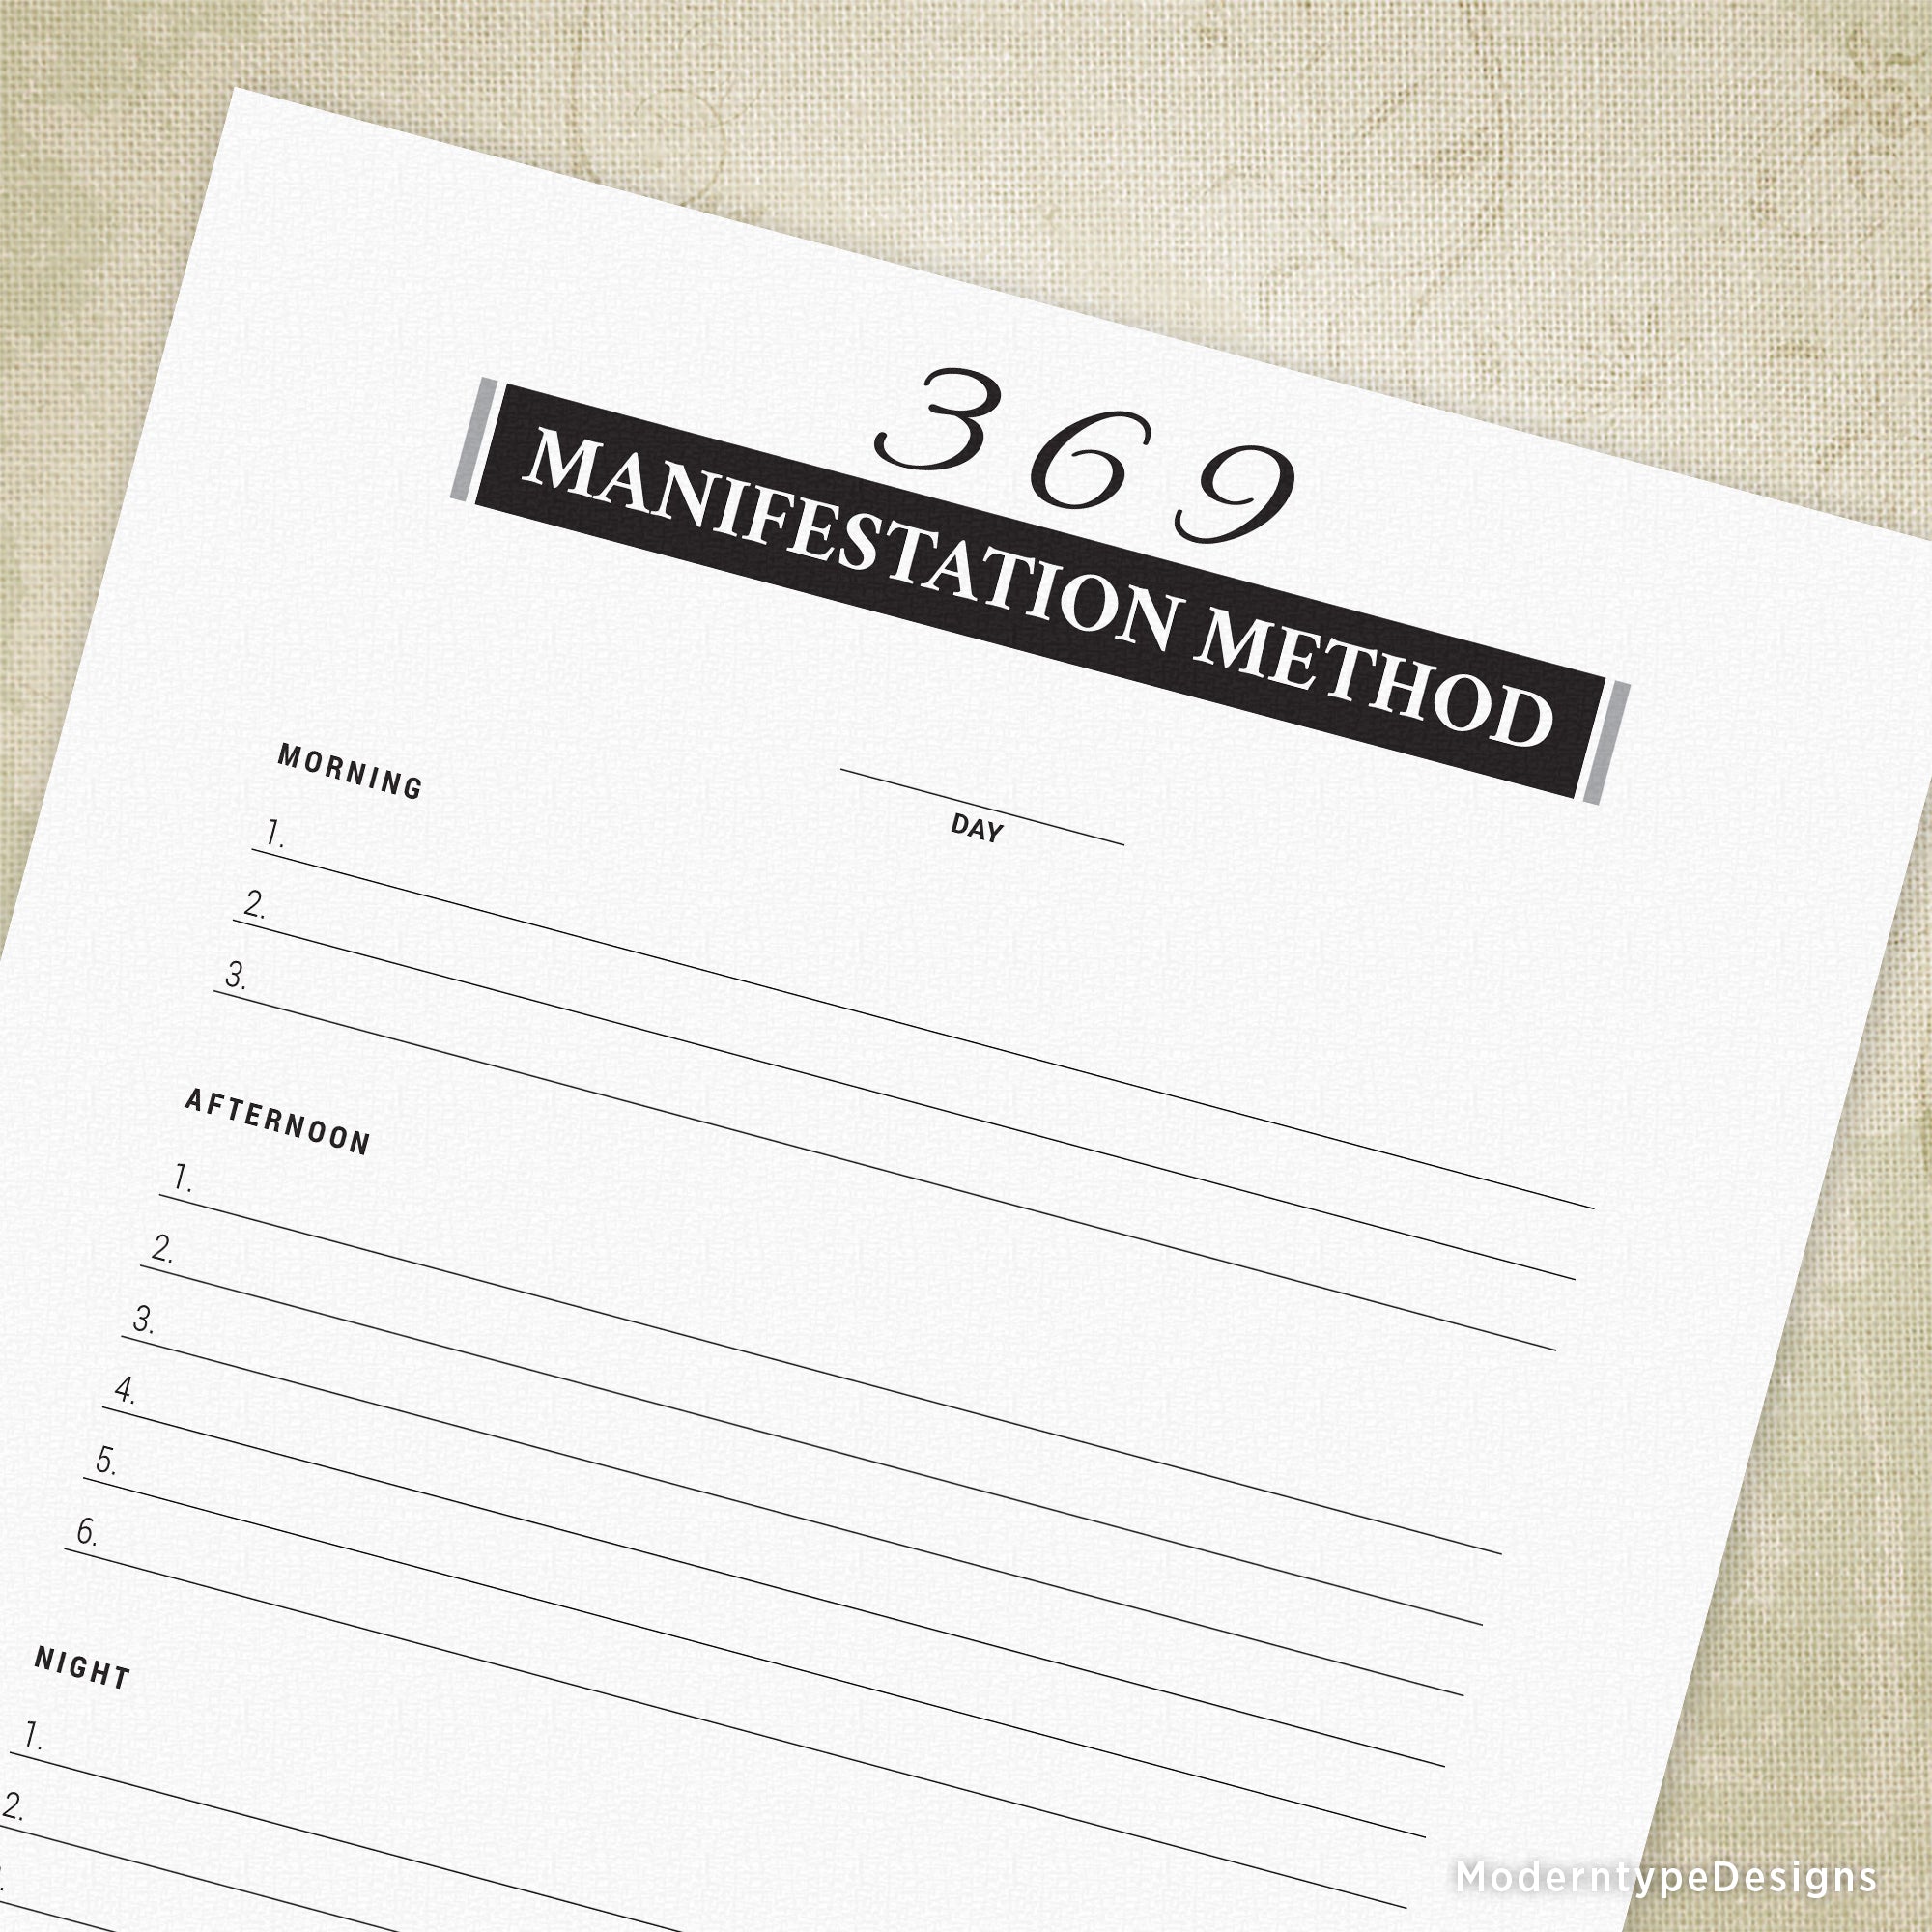 369-manifestation-method-printable